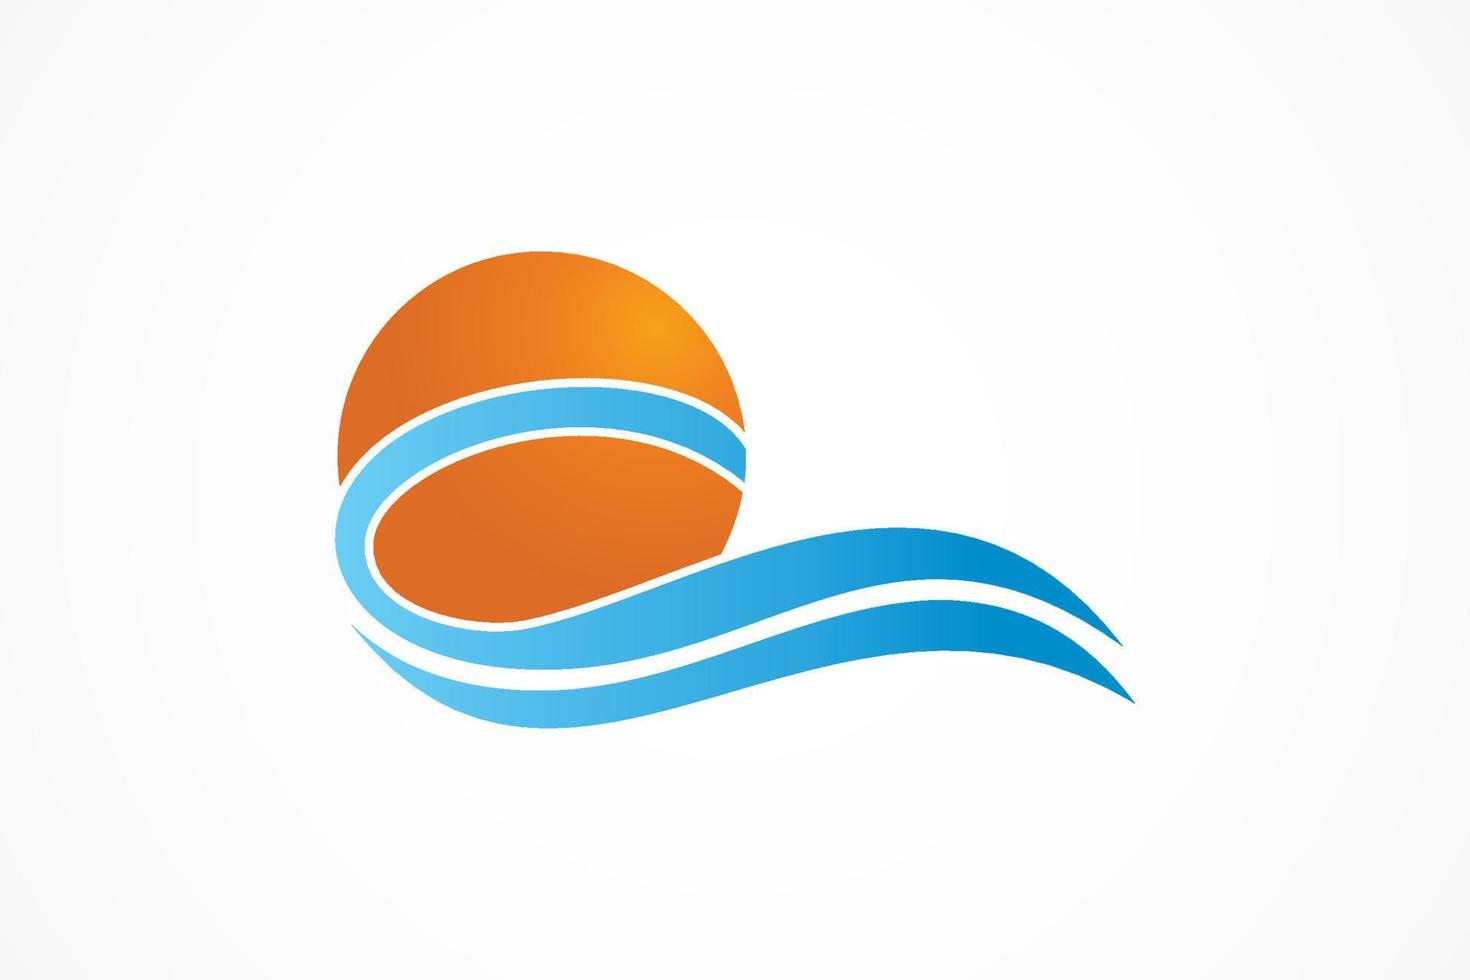 Abstract Circular Sun and Sea Wave Logo. Flat Vector Logo Design Template Element.